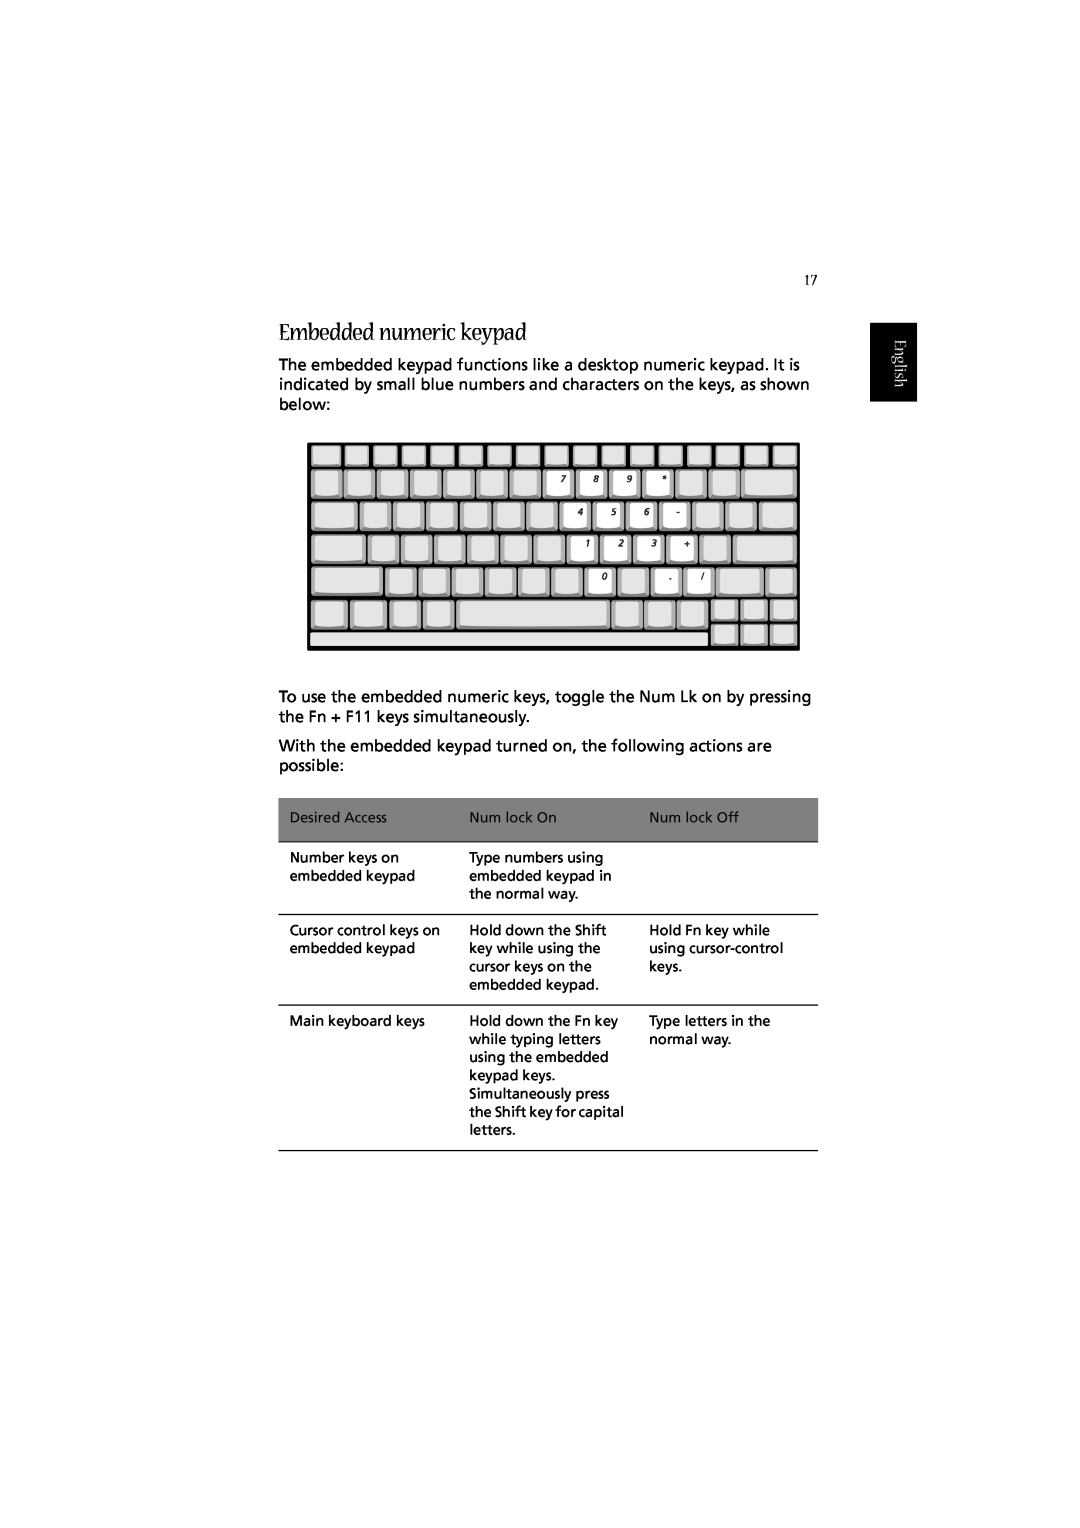 Acer 2010 manual Embedded numeric keypad, English 